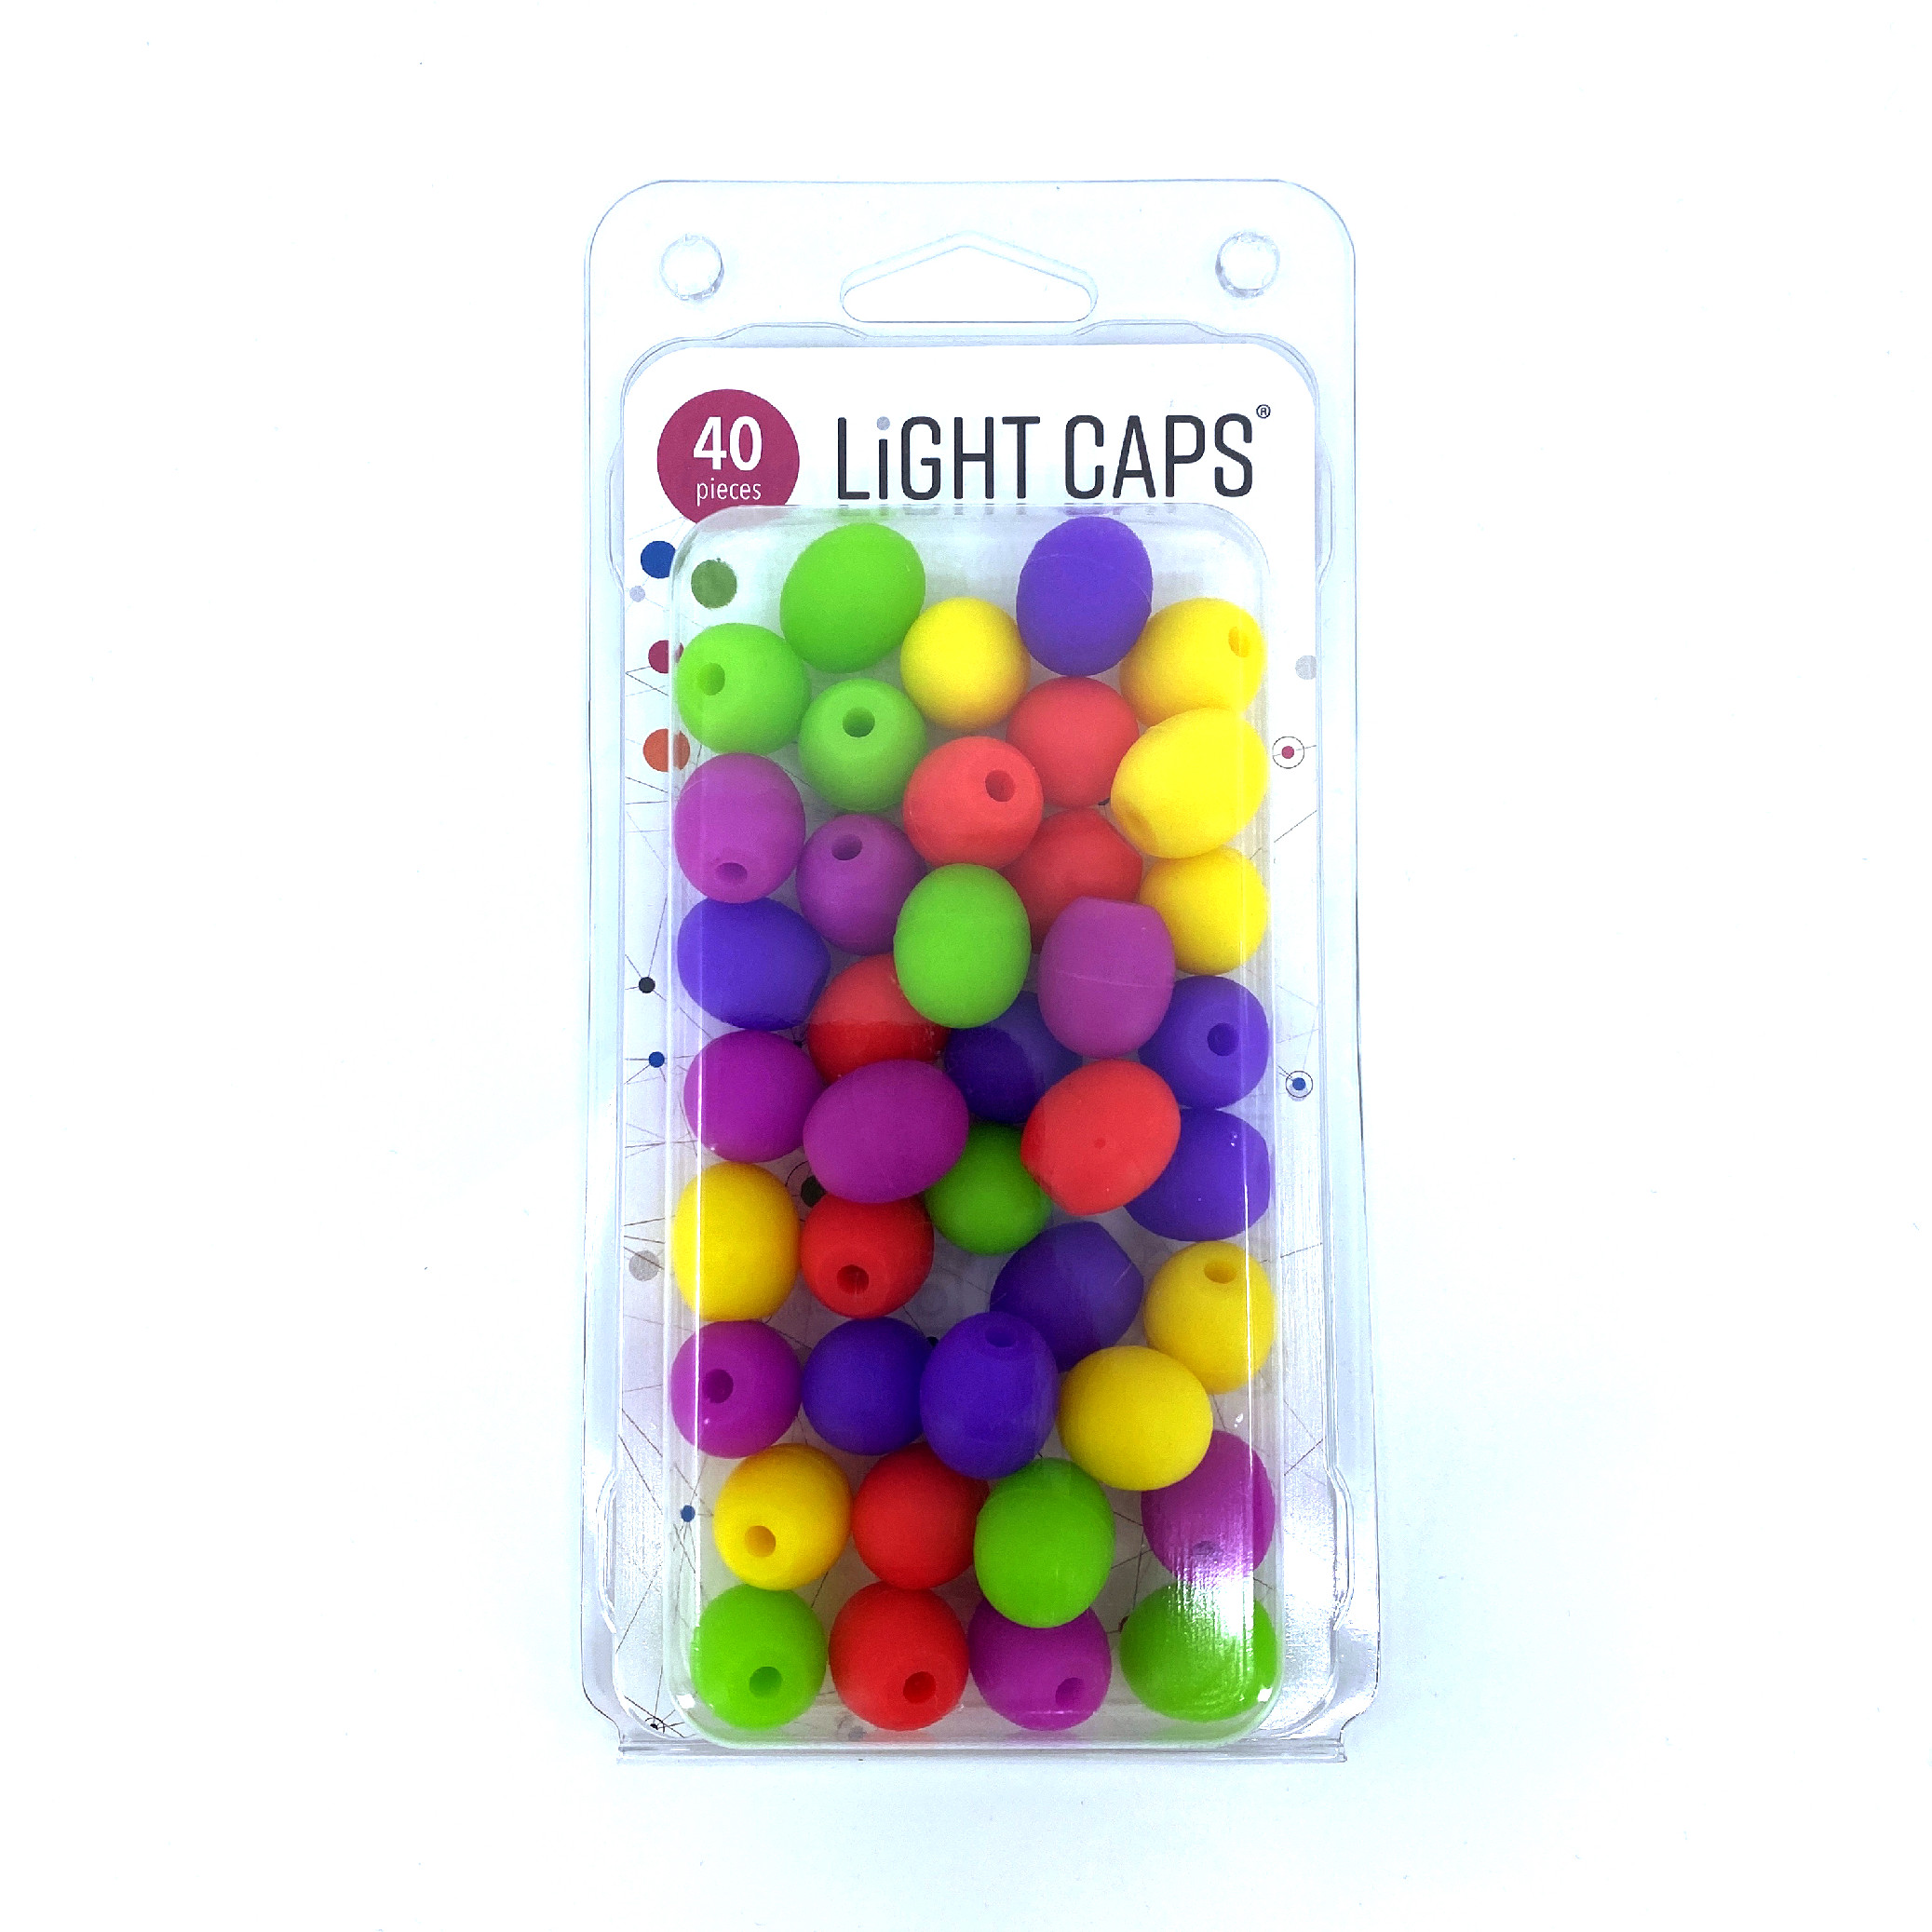 LIGHT CAPS® mix žlutá+zelená+červená+ 2 odstíny fialové, 40ks v balení